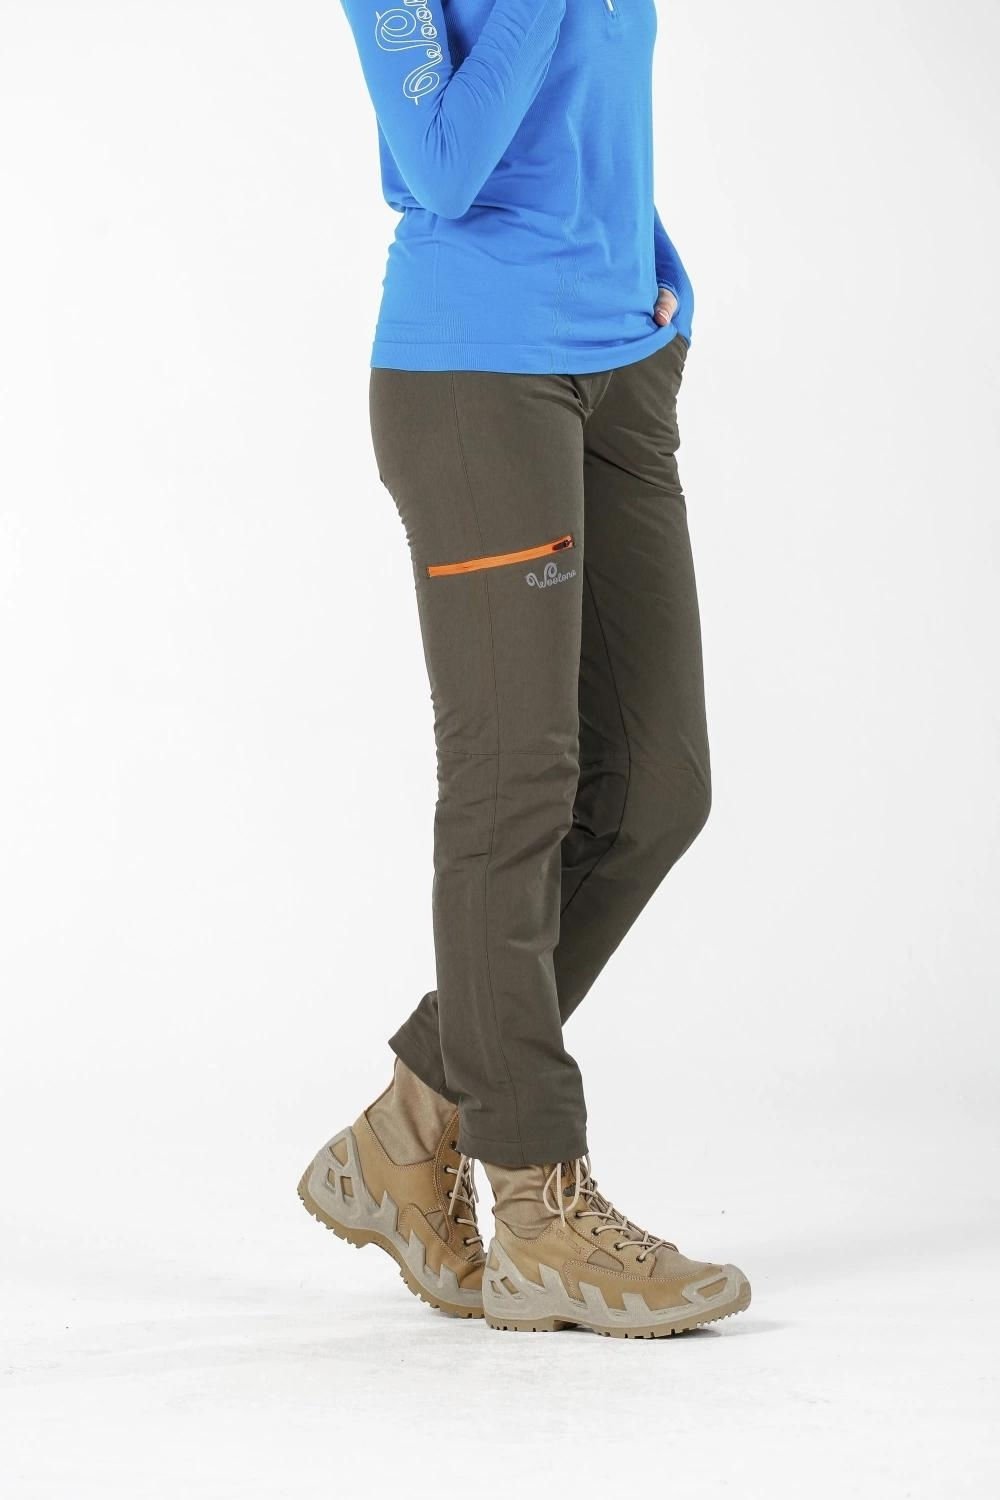 Woolona Comfort Haki Çift Yüzlü Yün Kadın Trekking Pantolonu